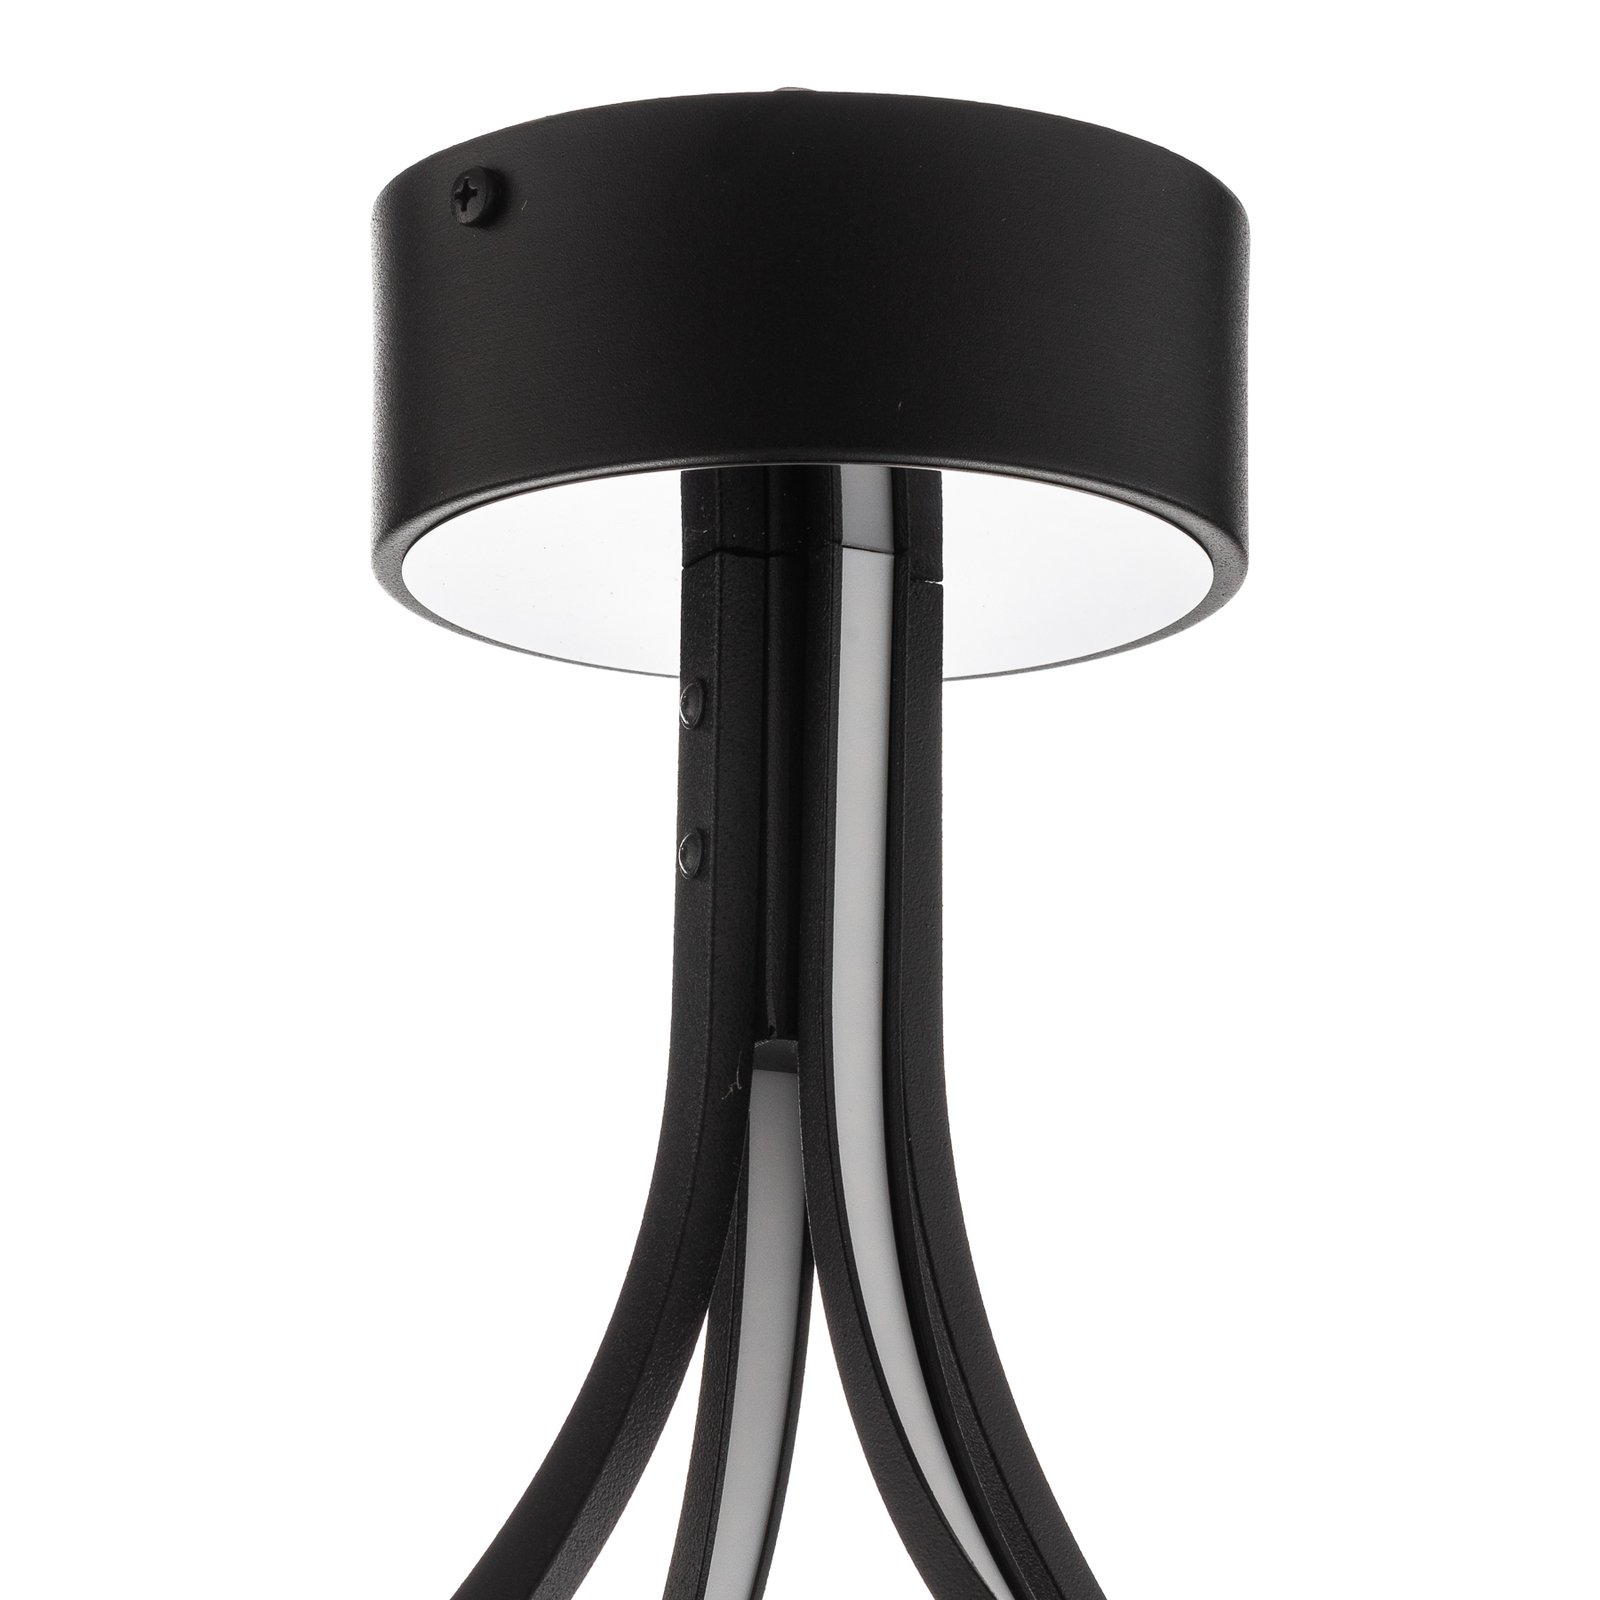 LED-Deckenlampe Lungo schwarz, Höhe 42 cm